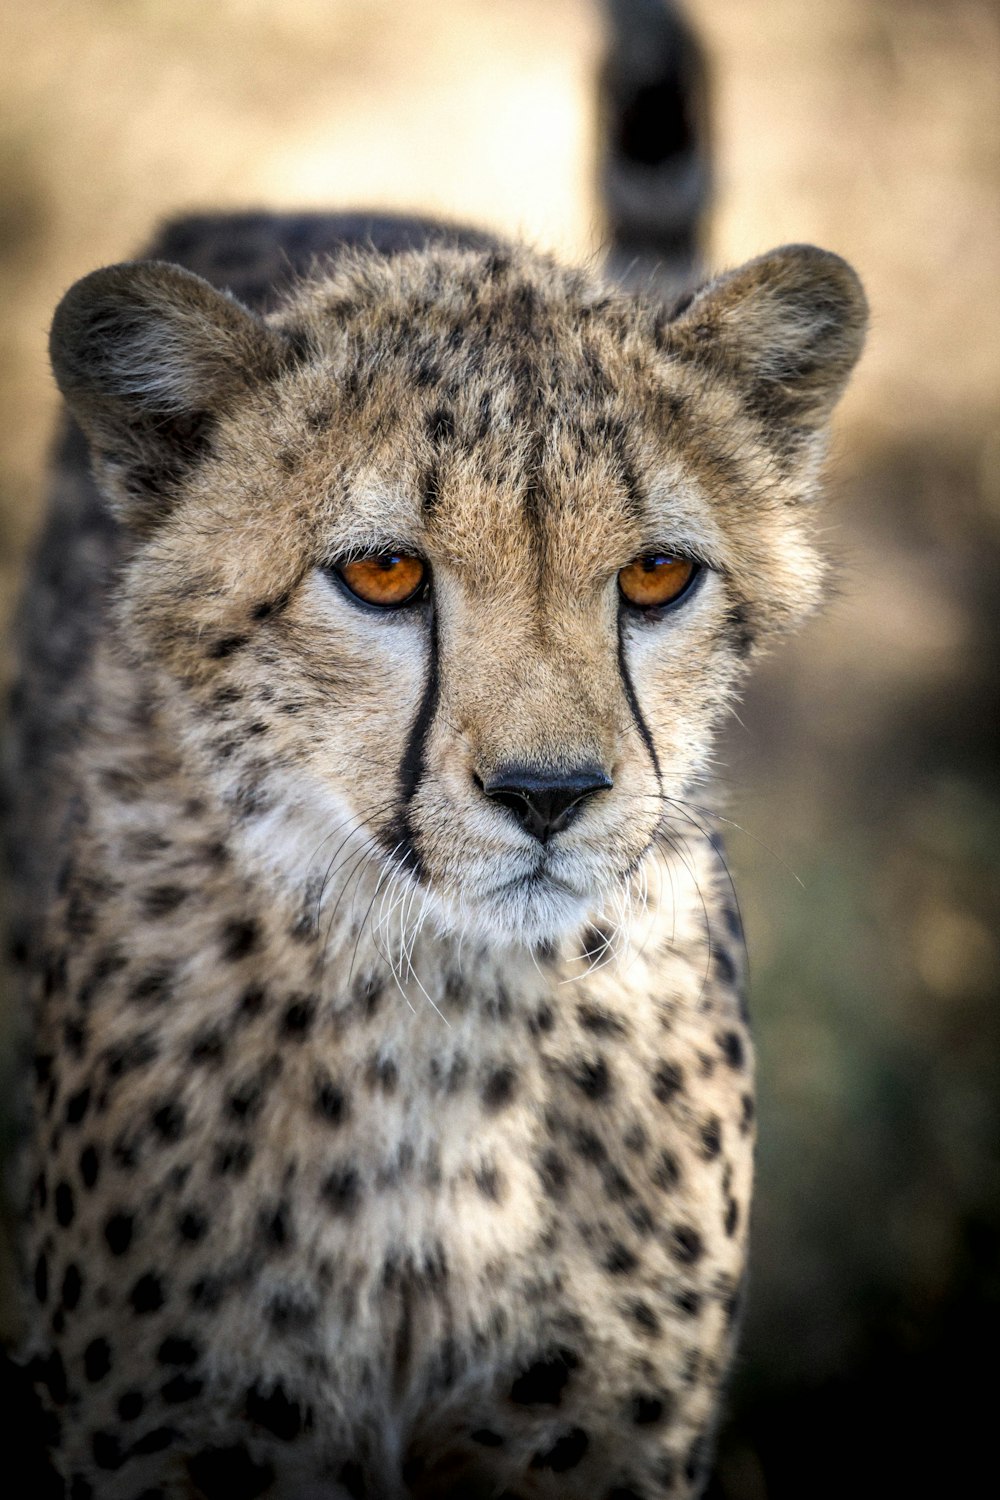 ghepardo marrone e nero in fotografia ravvicinata